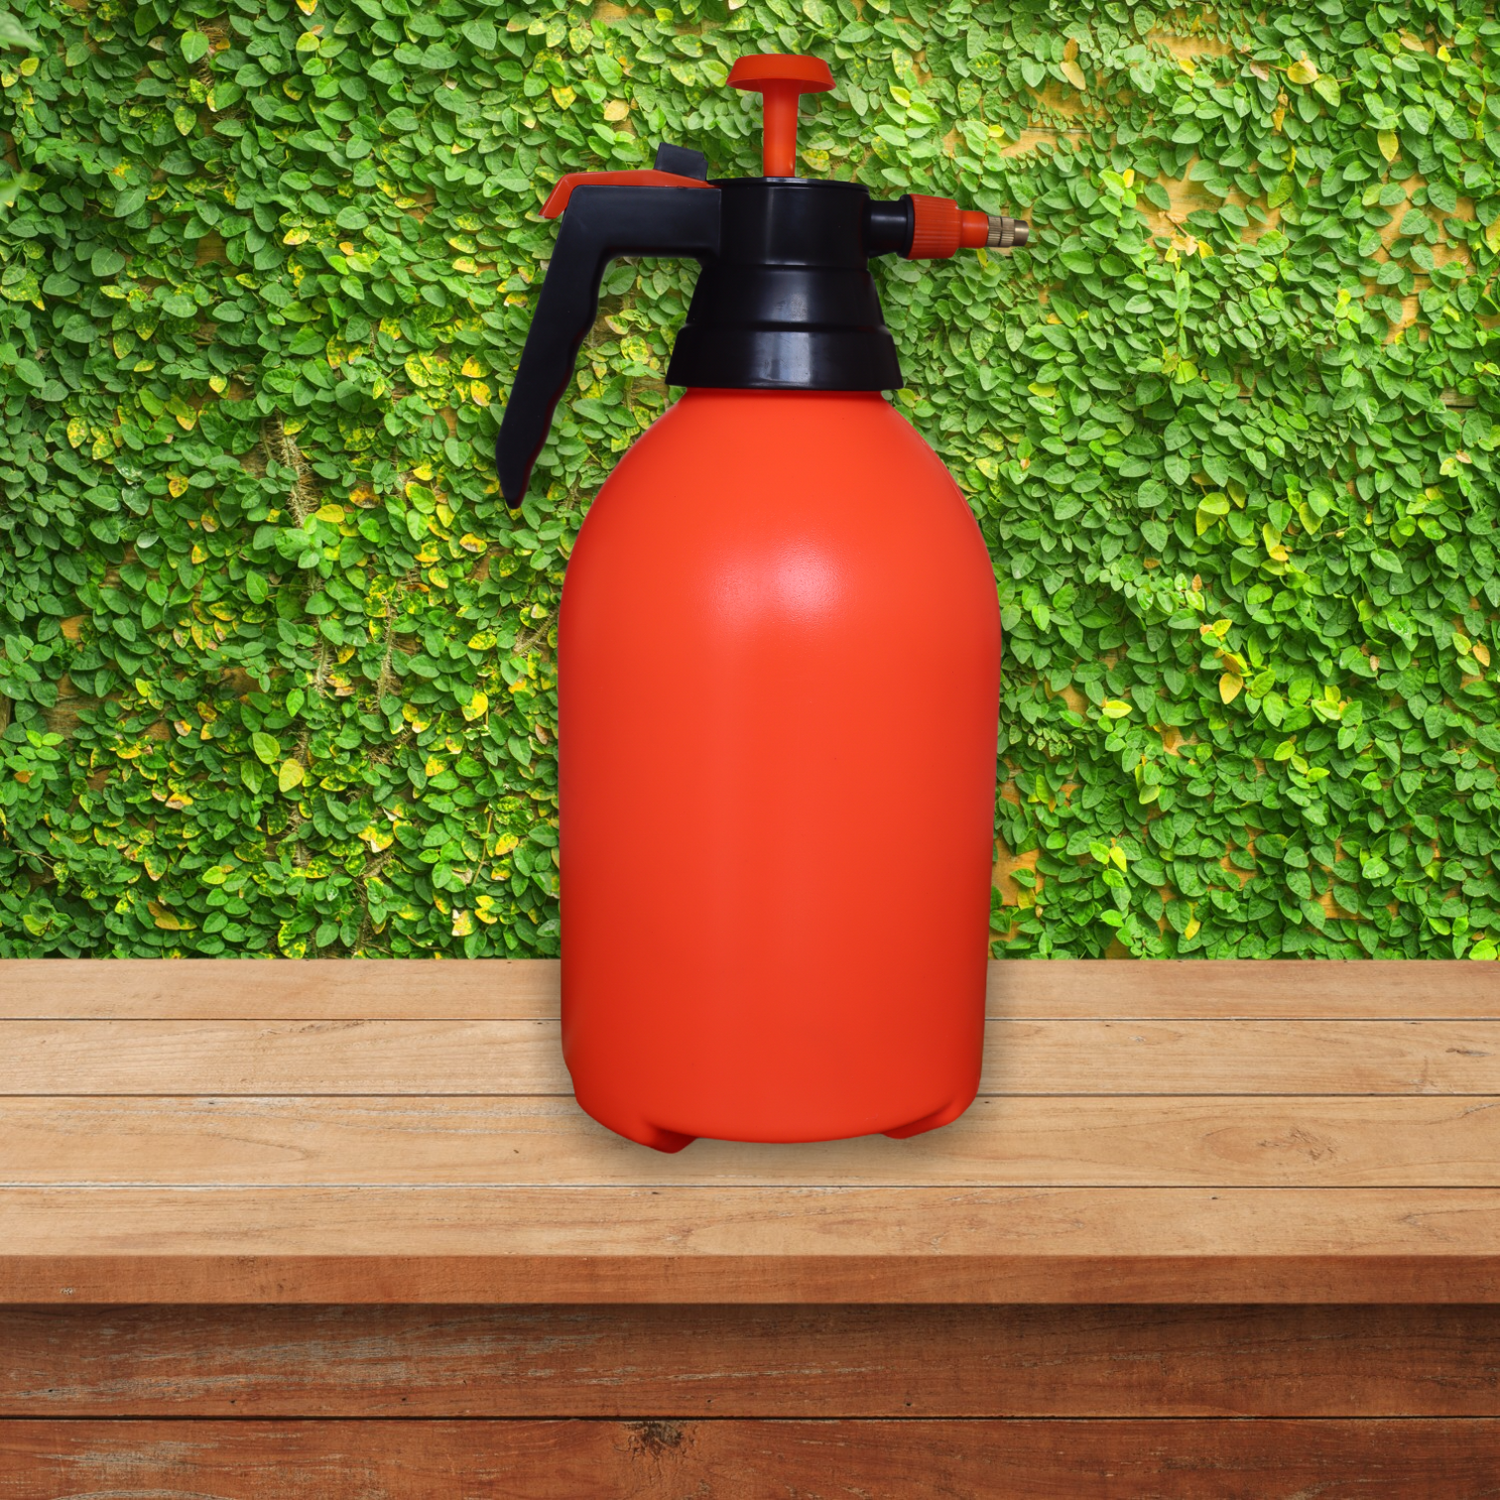 Water Sprayer Hand-Held Pump Pressure Garden Sprayer - 3 Litre